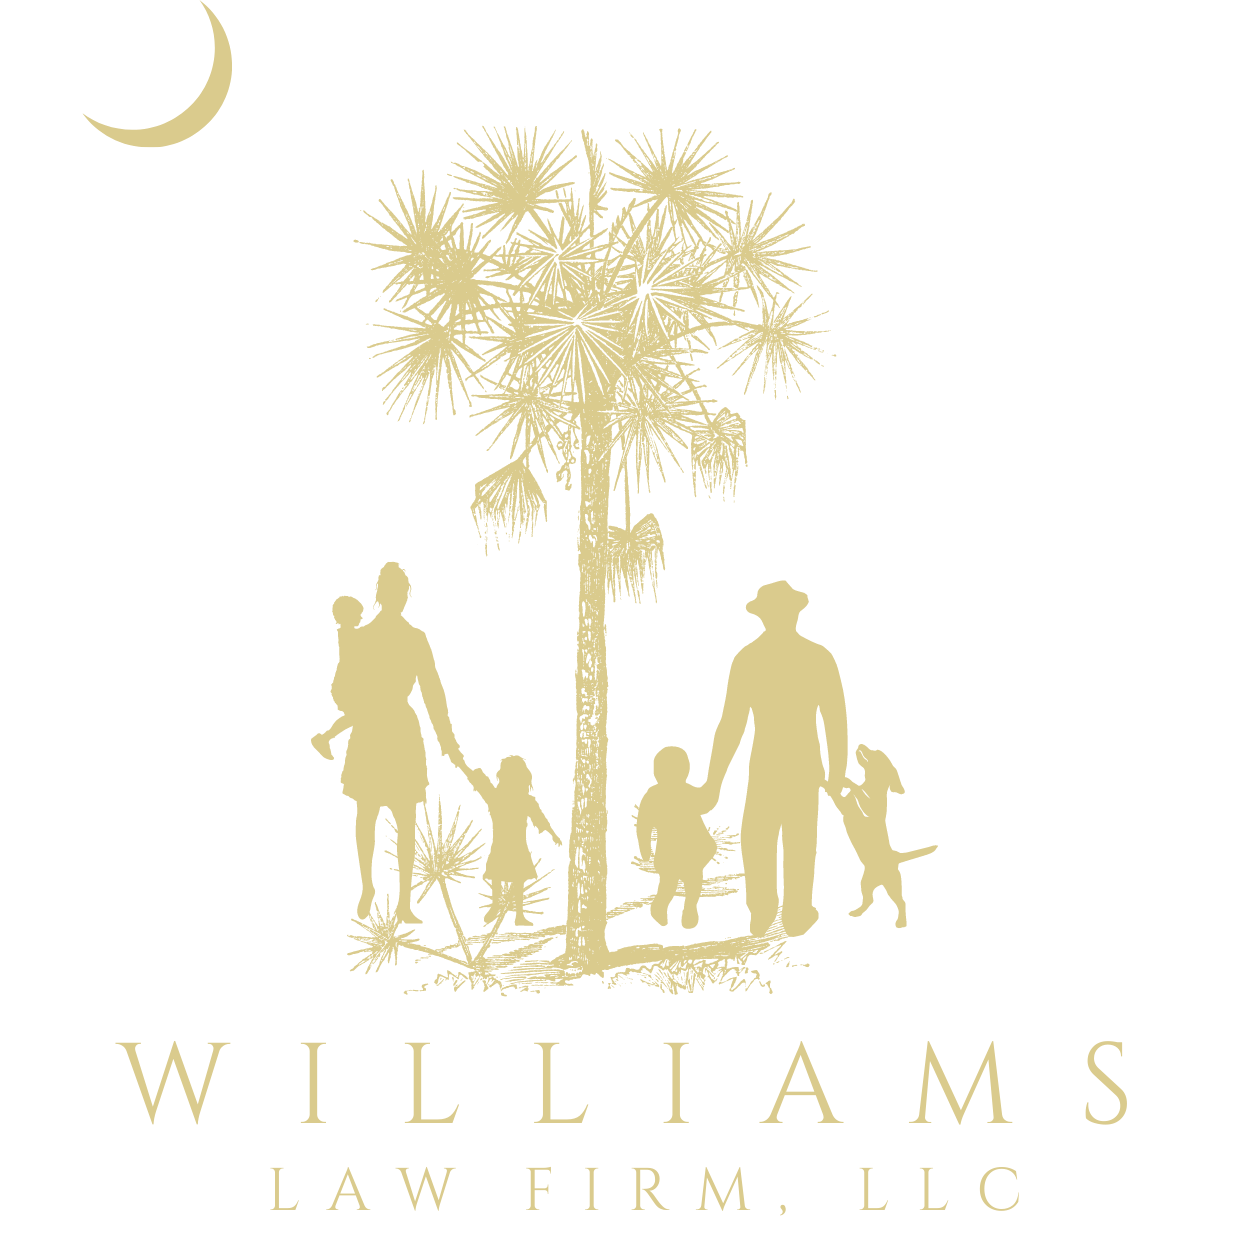 Williams Law Firm, LLC